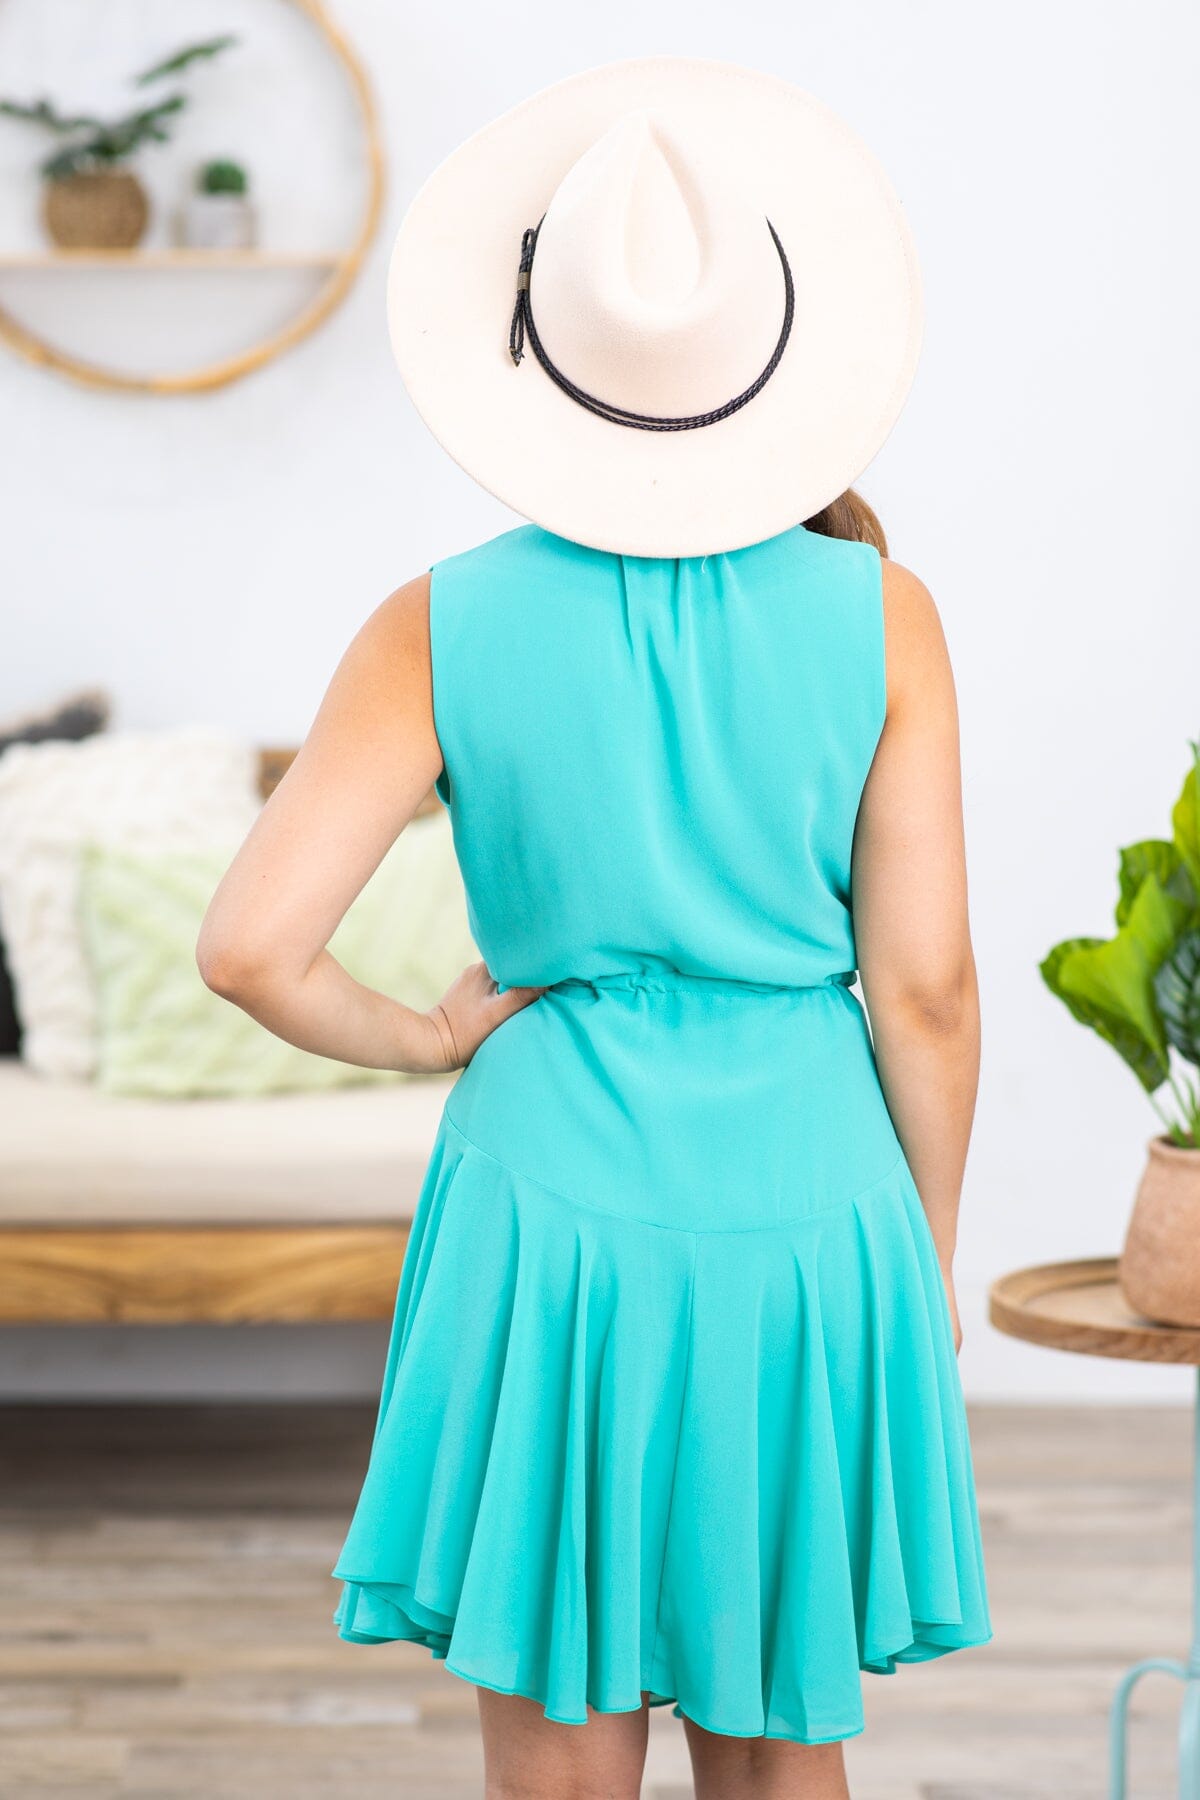 Turquoise V-Neck Self Tie Godet Skirt Dress - Filly Flair